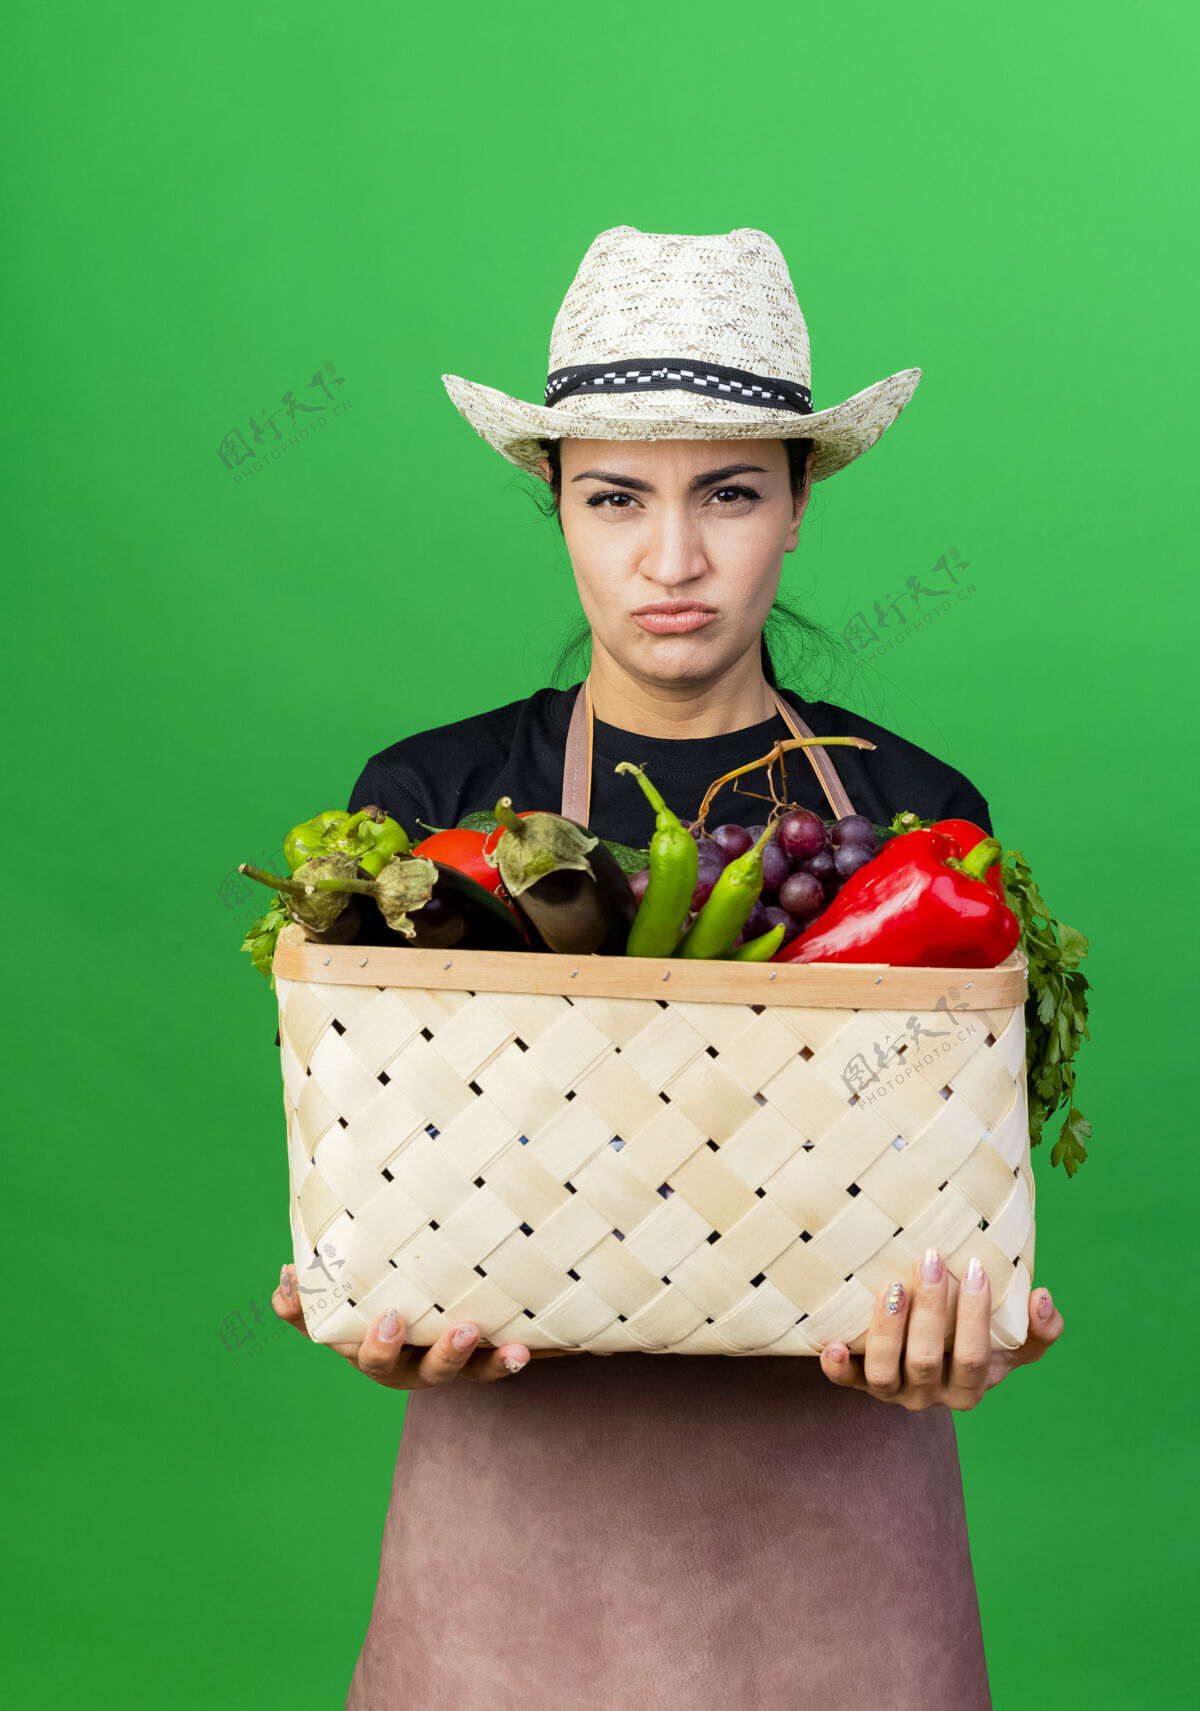 市民年轻漂亮的女园丁 围着围裙 戴着帽子 手里拿着装满蔬菜的篮子 站在绿色的墙上 严肃地看着前面 脸上露出不高兴的神情人人花园